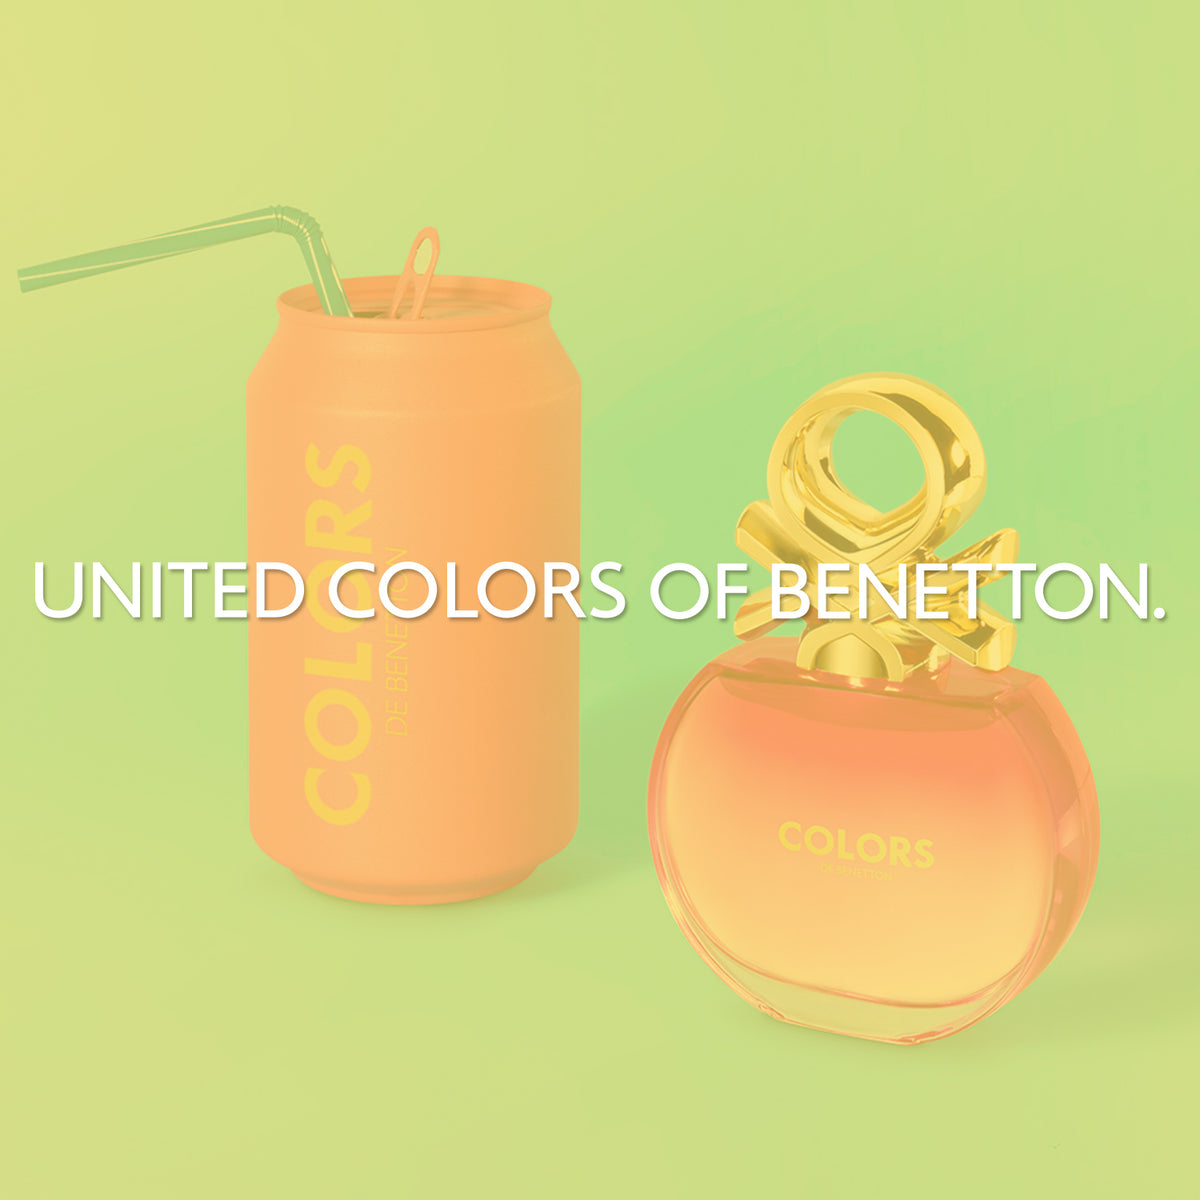 United Colors of Benetton - Colors de Benetton Pink & Blue ~ New